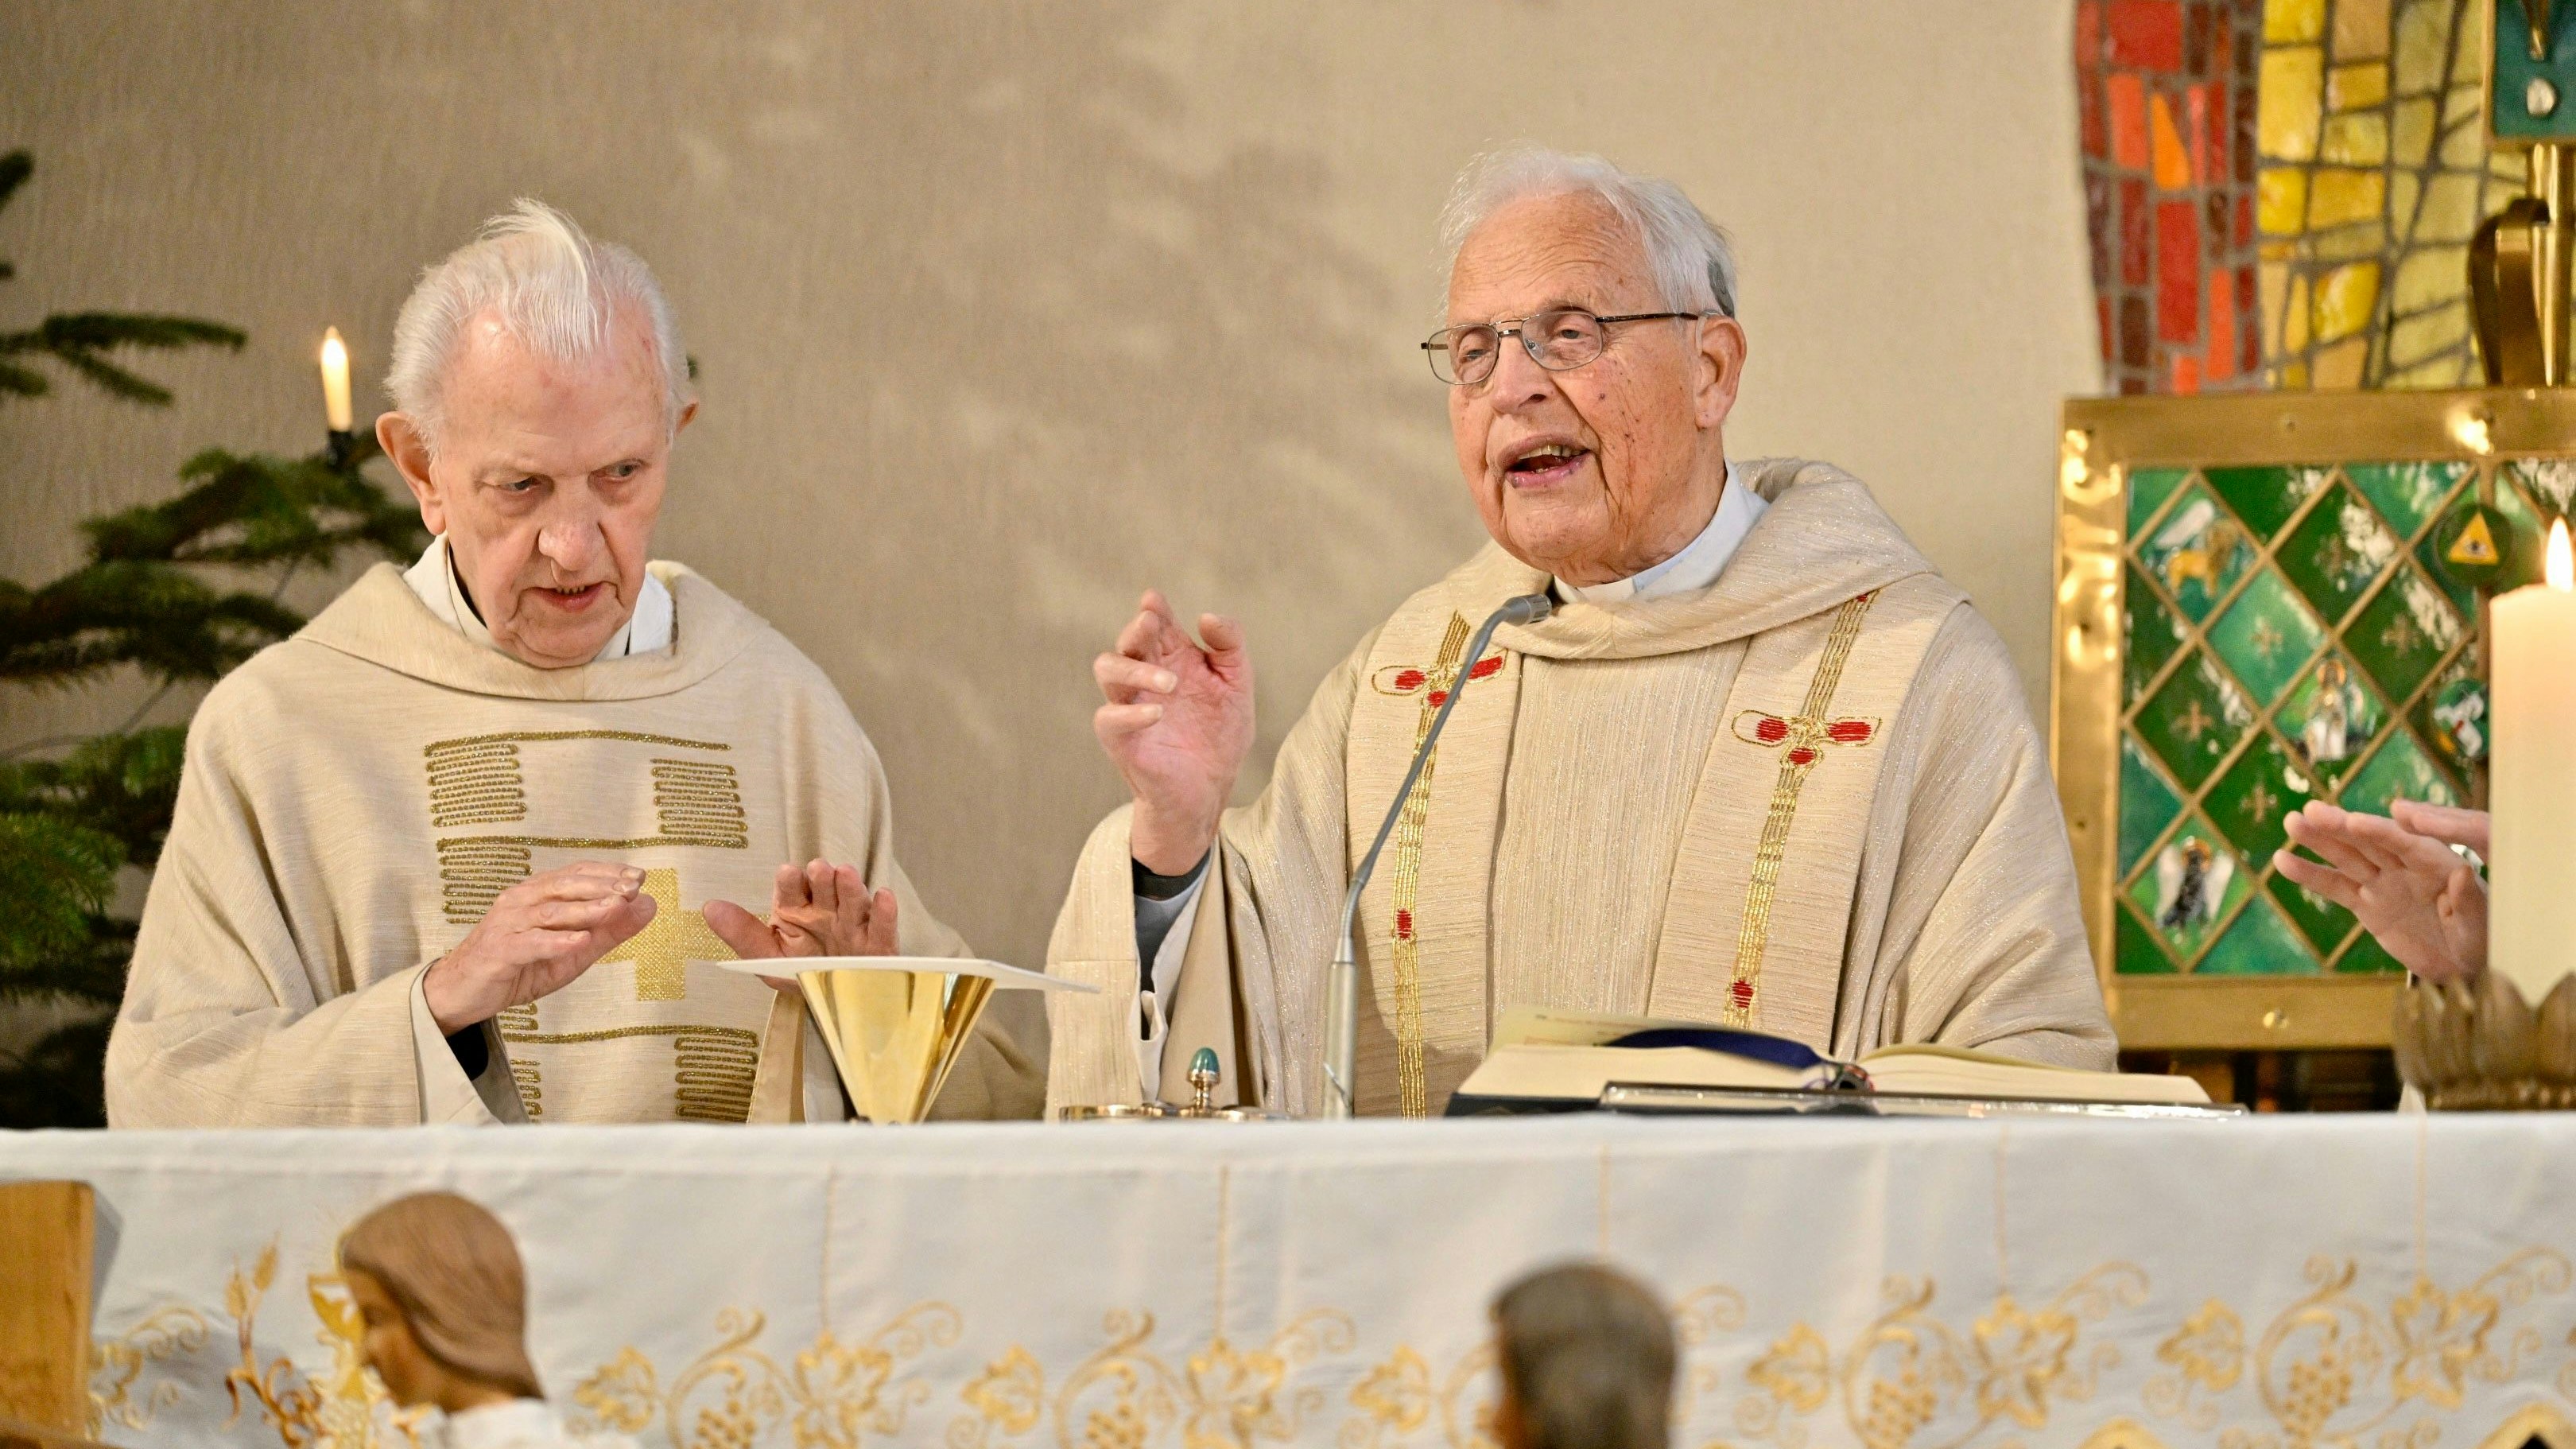 Seit Jahrzehnten eingespielt: Pfarrer Richard Büssing (von links) und der Jubilar, Professor Ralph Sauer. Foto: M. Niehues